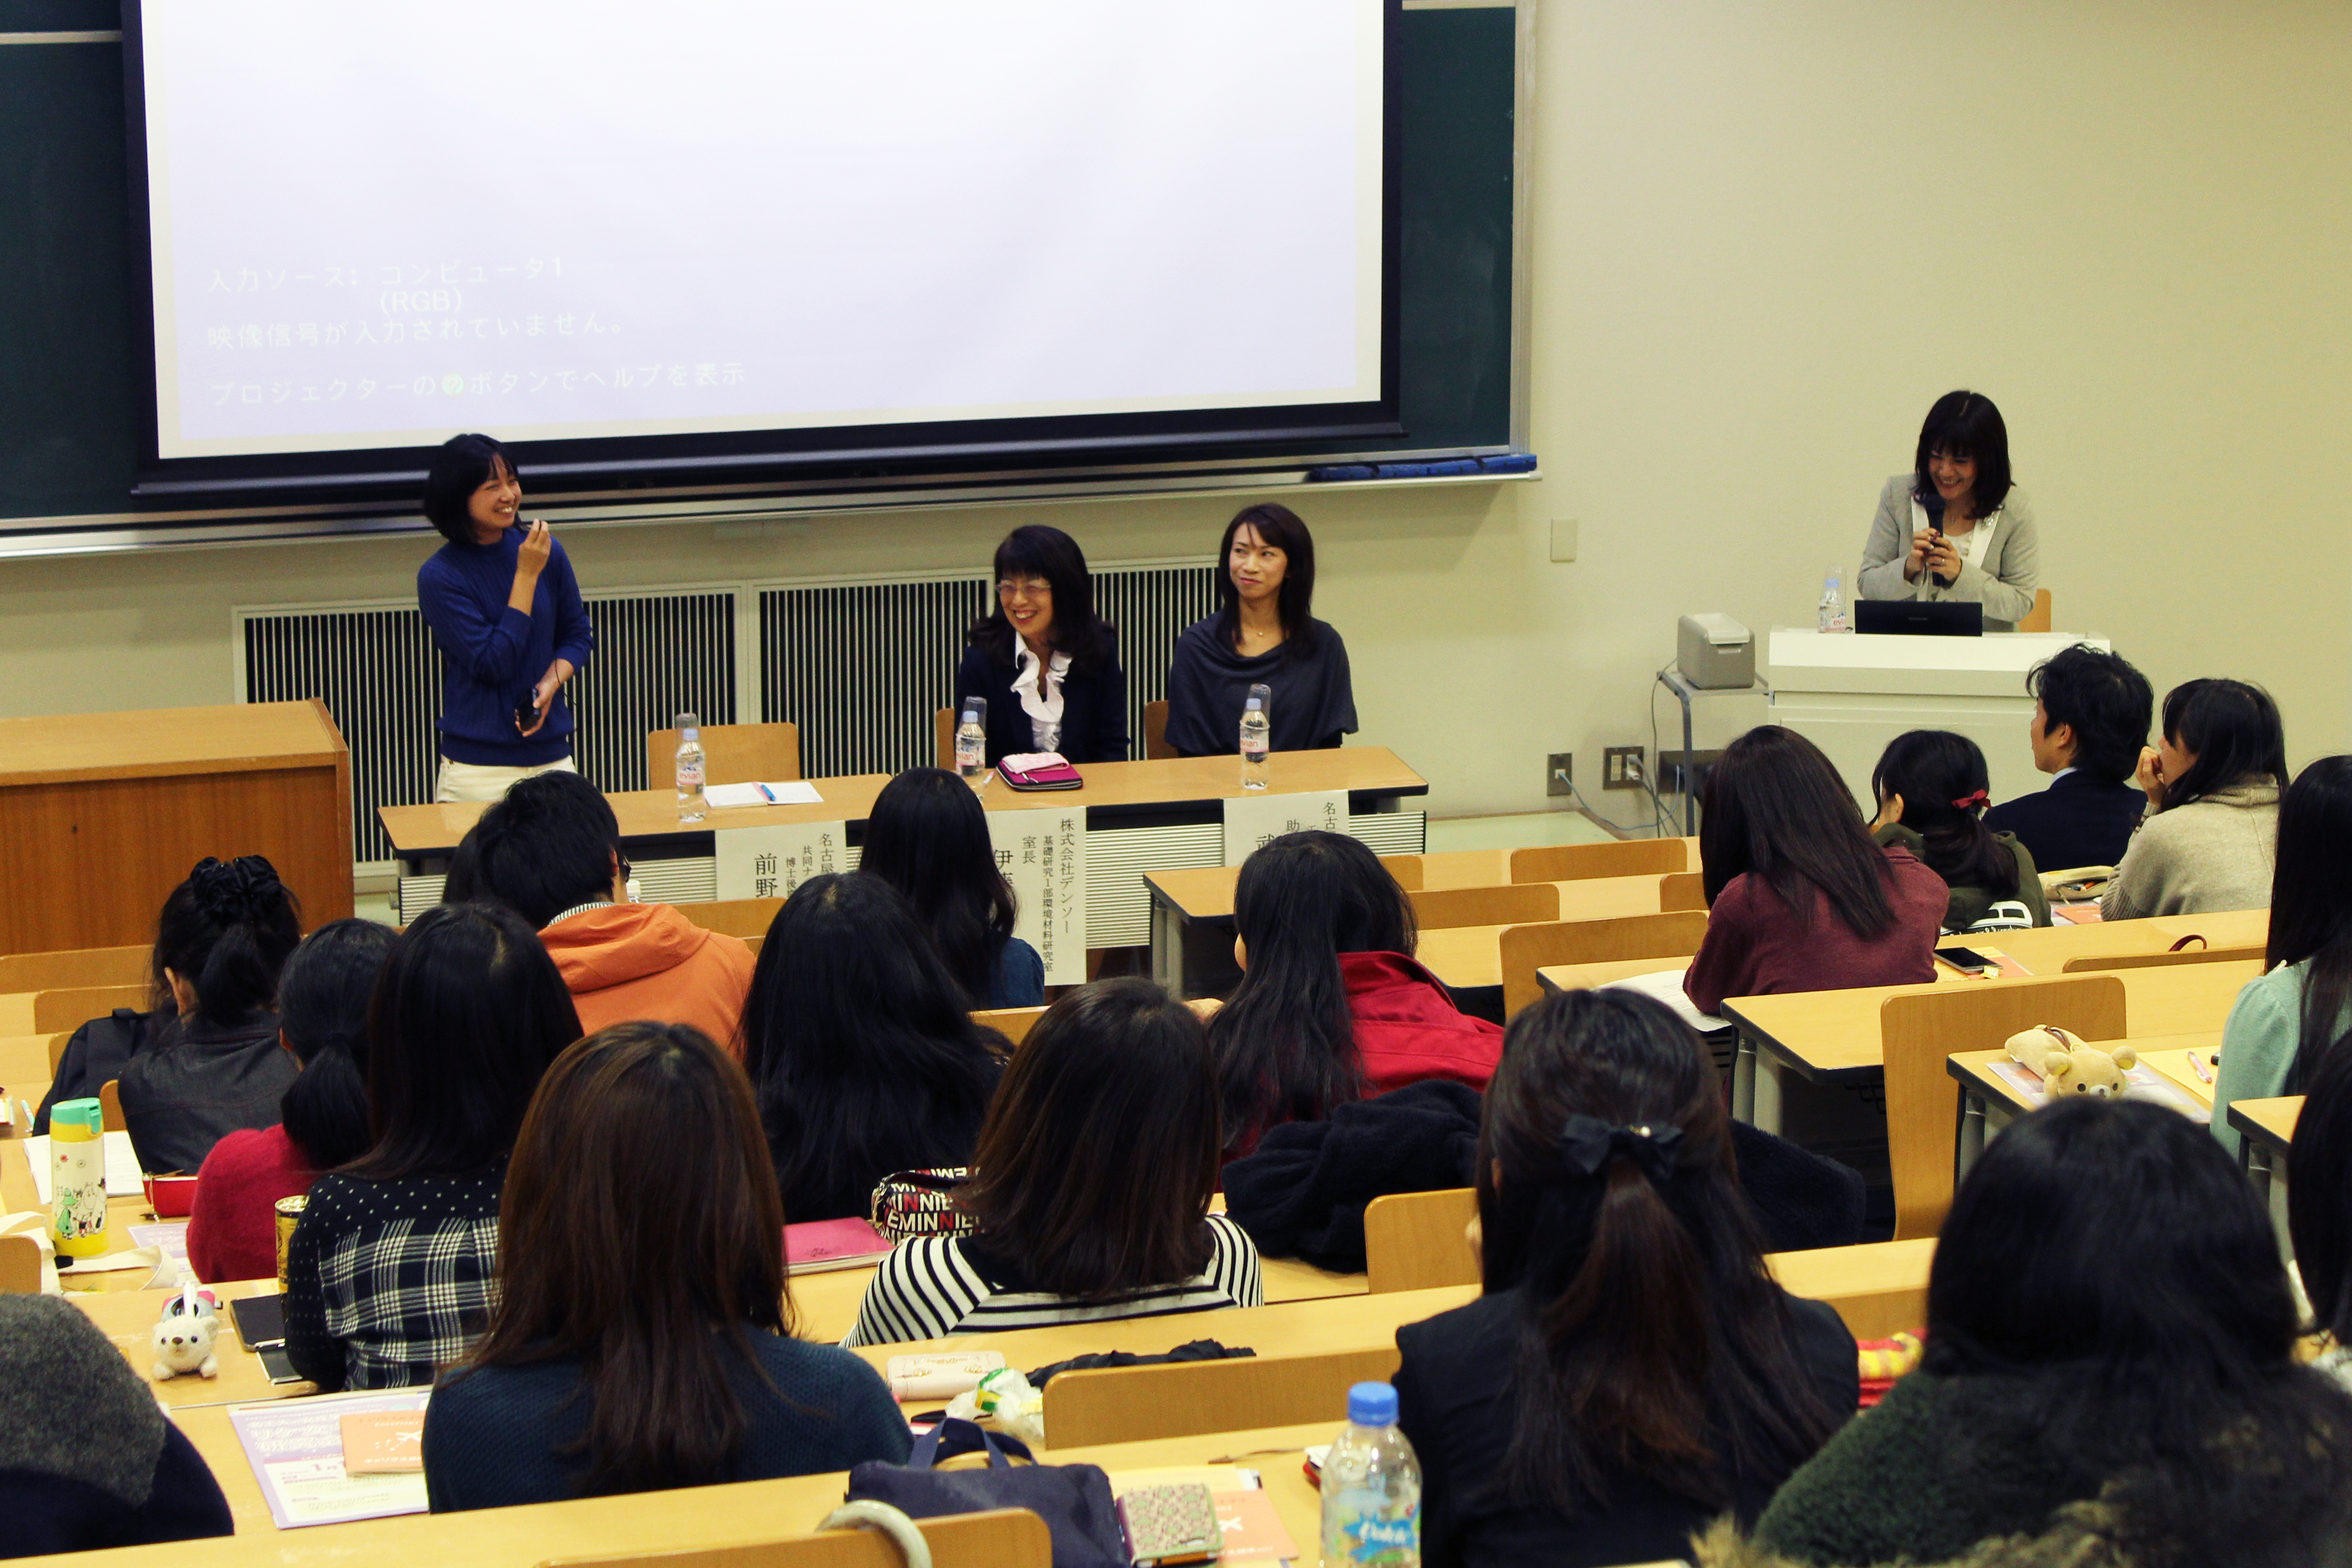 開催日 11月25日 女性研究者と女性技術者のワークライフバランスの推進 シンポジウムを開催しました 名古屋工業大学 ダイバーシティ推進センター